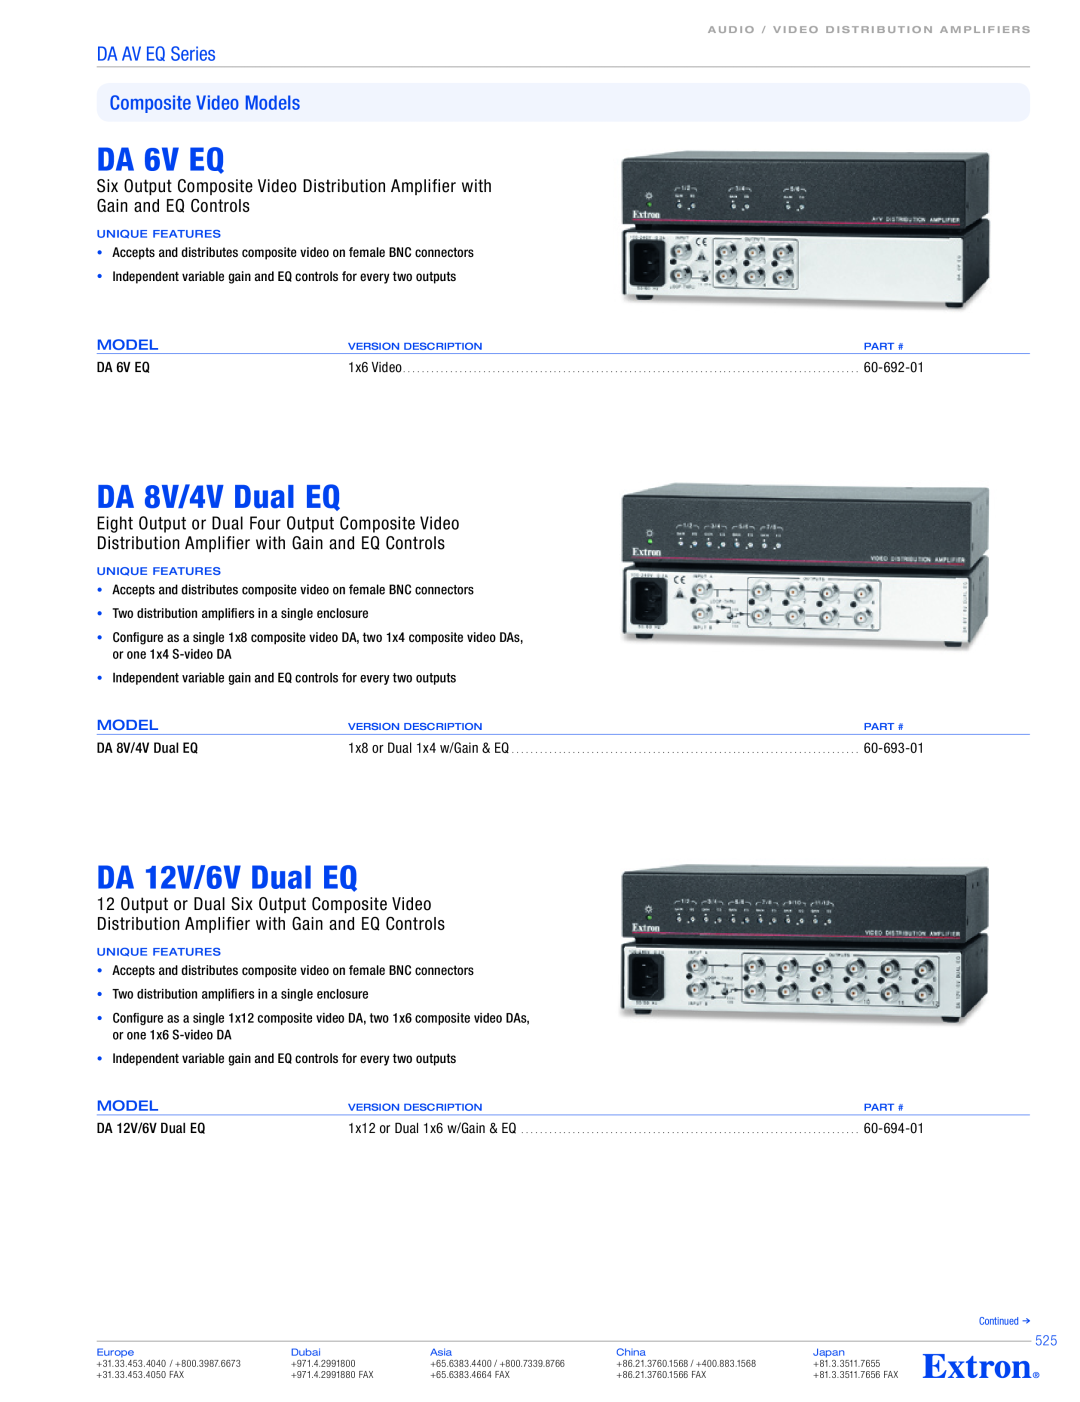 Extron electronic DA 6V EQ, DA 8V/4V Dual EQ, DA 12V/6V Dual EQ, DA AV EQ Series Composite Video Models, 60-692-01 